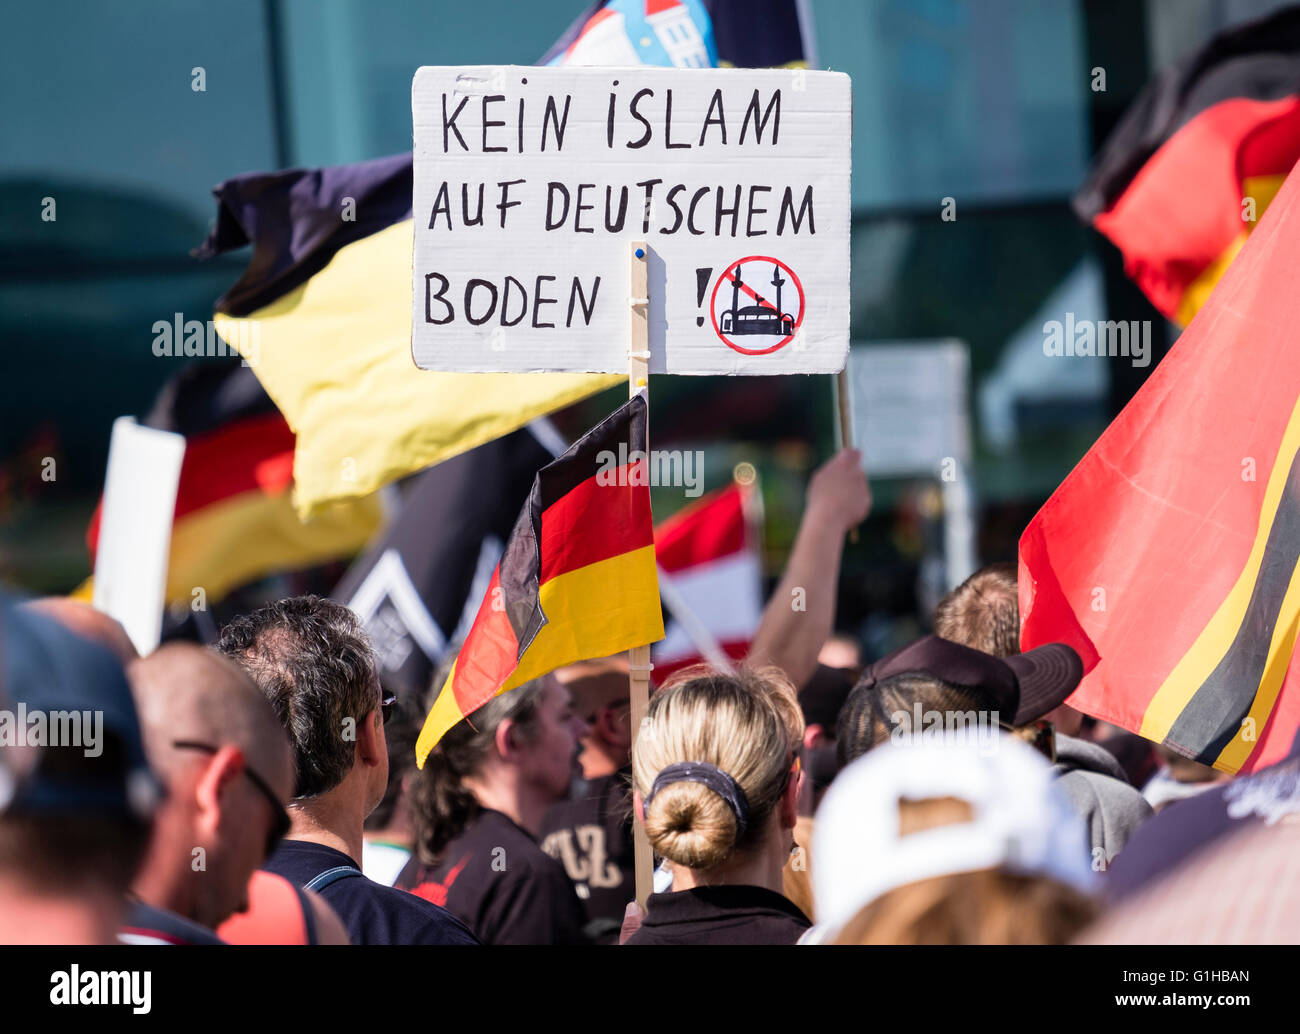 Los manifestantes de extrema derecha protesta contra el Islam, refugiados y Angela Merkel en Berlín. La señal dice ' No Islam en suelo alemán". Foto de stock